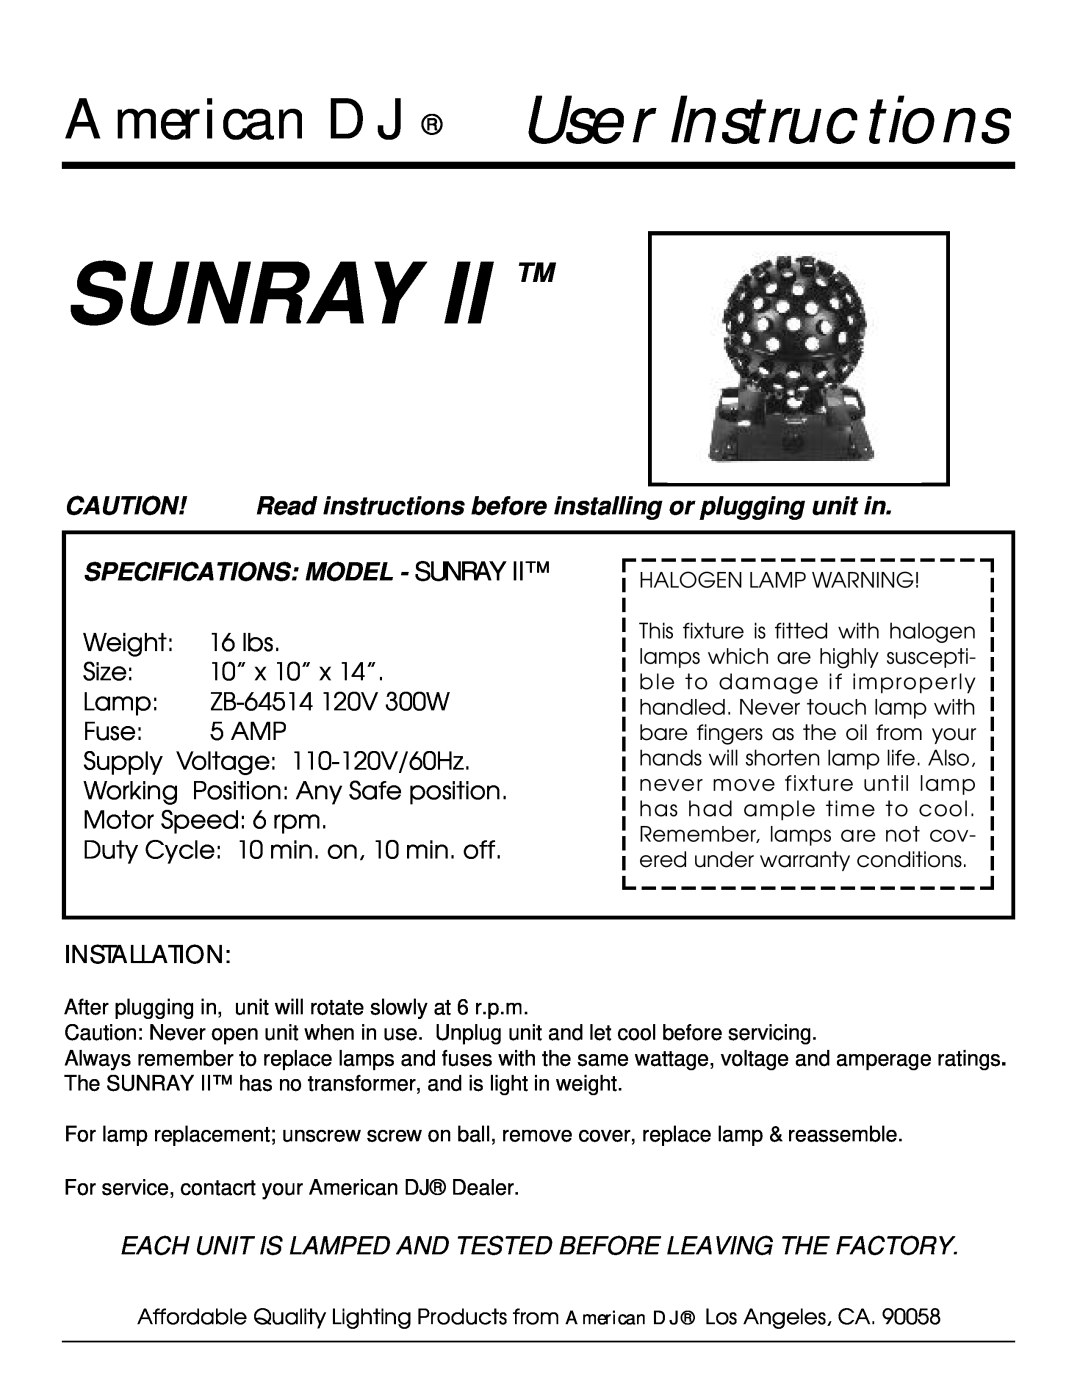 American DJ specifications American DJ User Instructions, Specifications Model - Sunray, Installation 